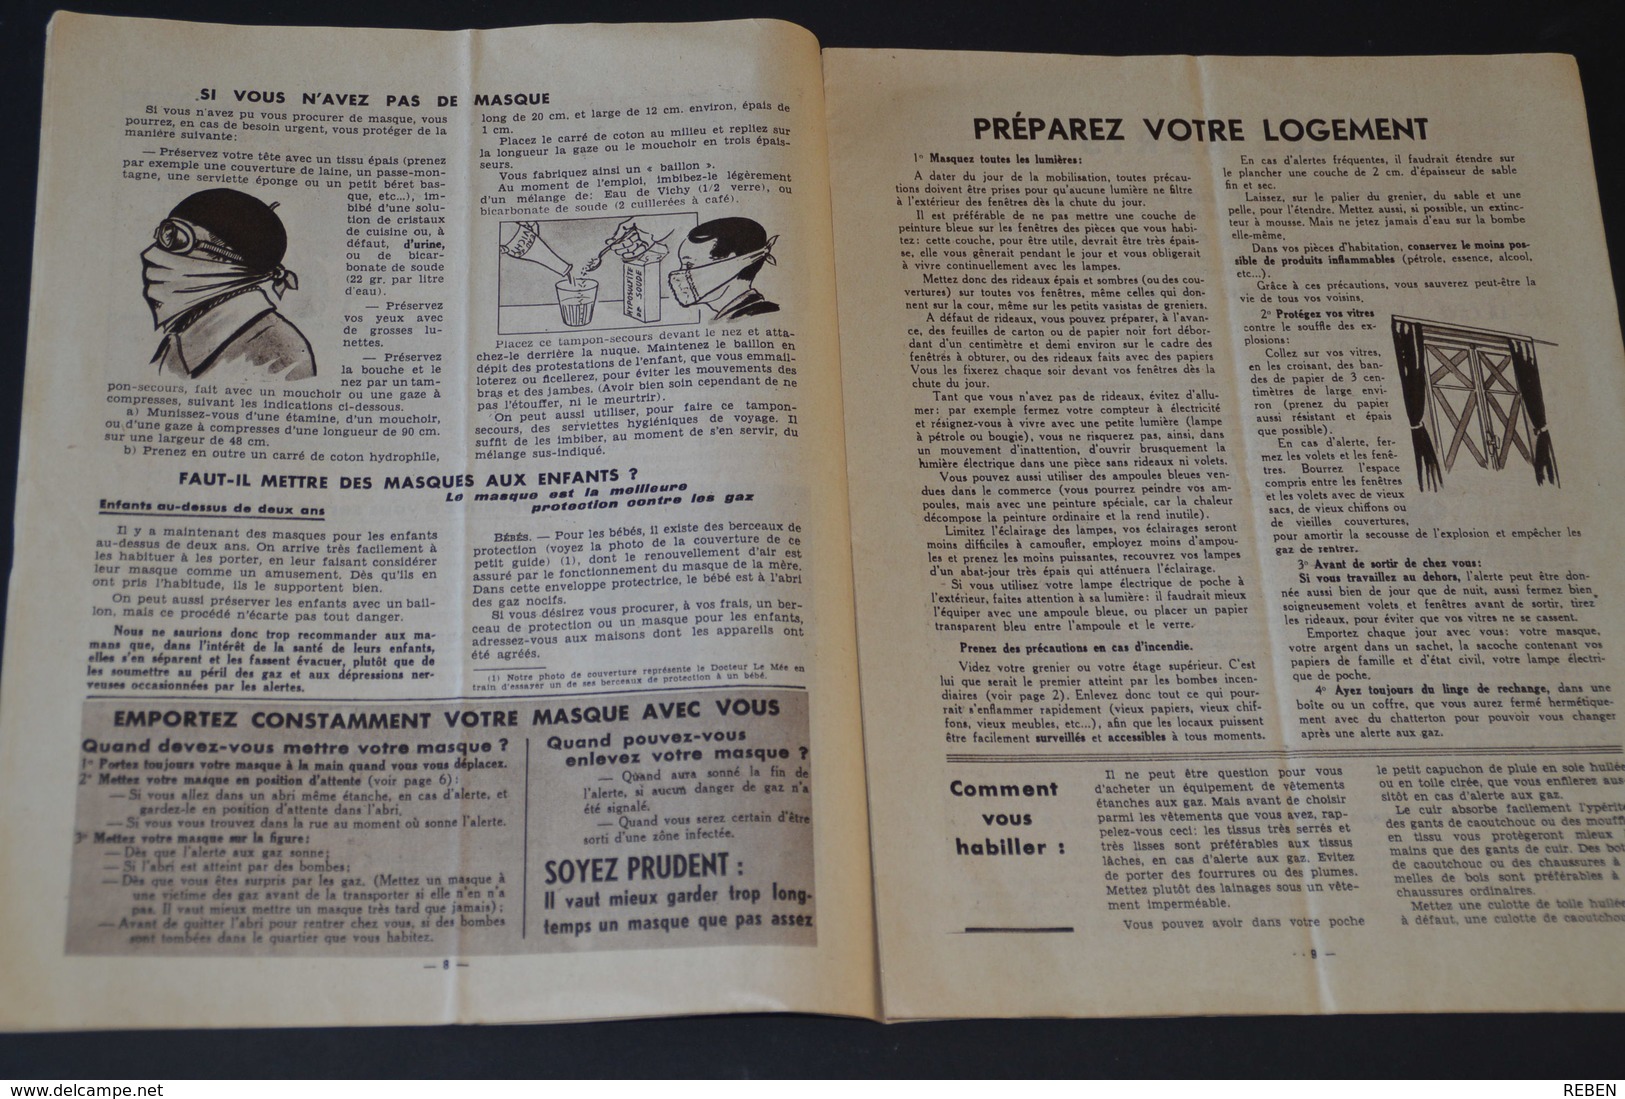 109/ coupure de presse-clipping - 24 pages - année 1939 - militaria - Guide de défense passive